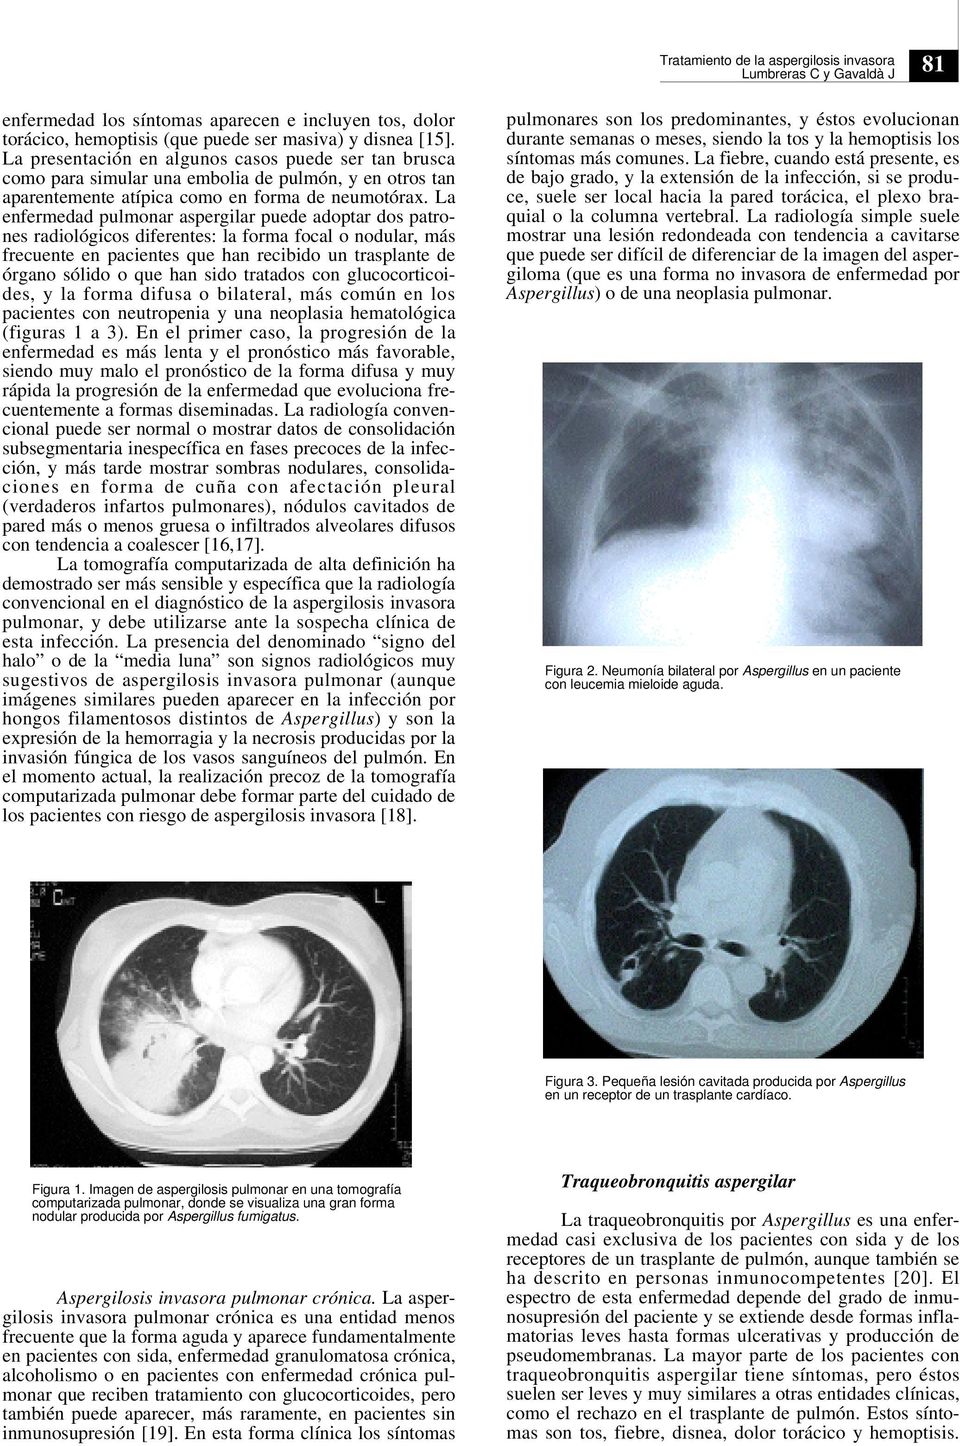 La enfermedad pulmonar aspergilar puede adoptar dos patrones radiológicos diferentes: la forma focal o nodular, más frecuente en pacientes que han recibido un trasplante de órgano sólido o que han